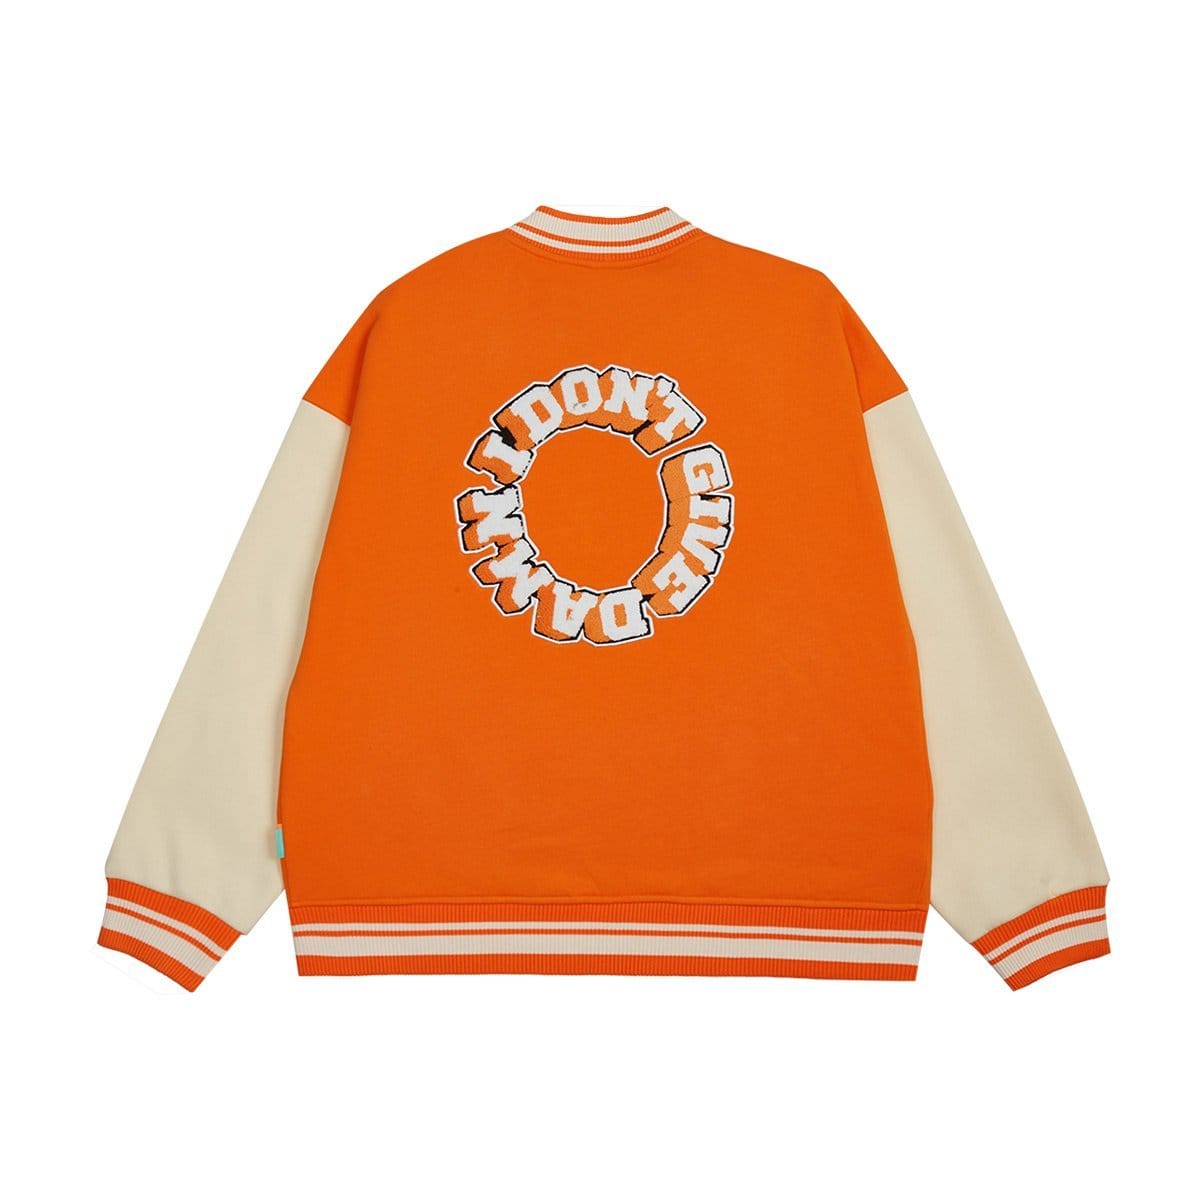 Orange Varsity Jacket Damn - Everyday Wear Retro Baseball Style